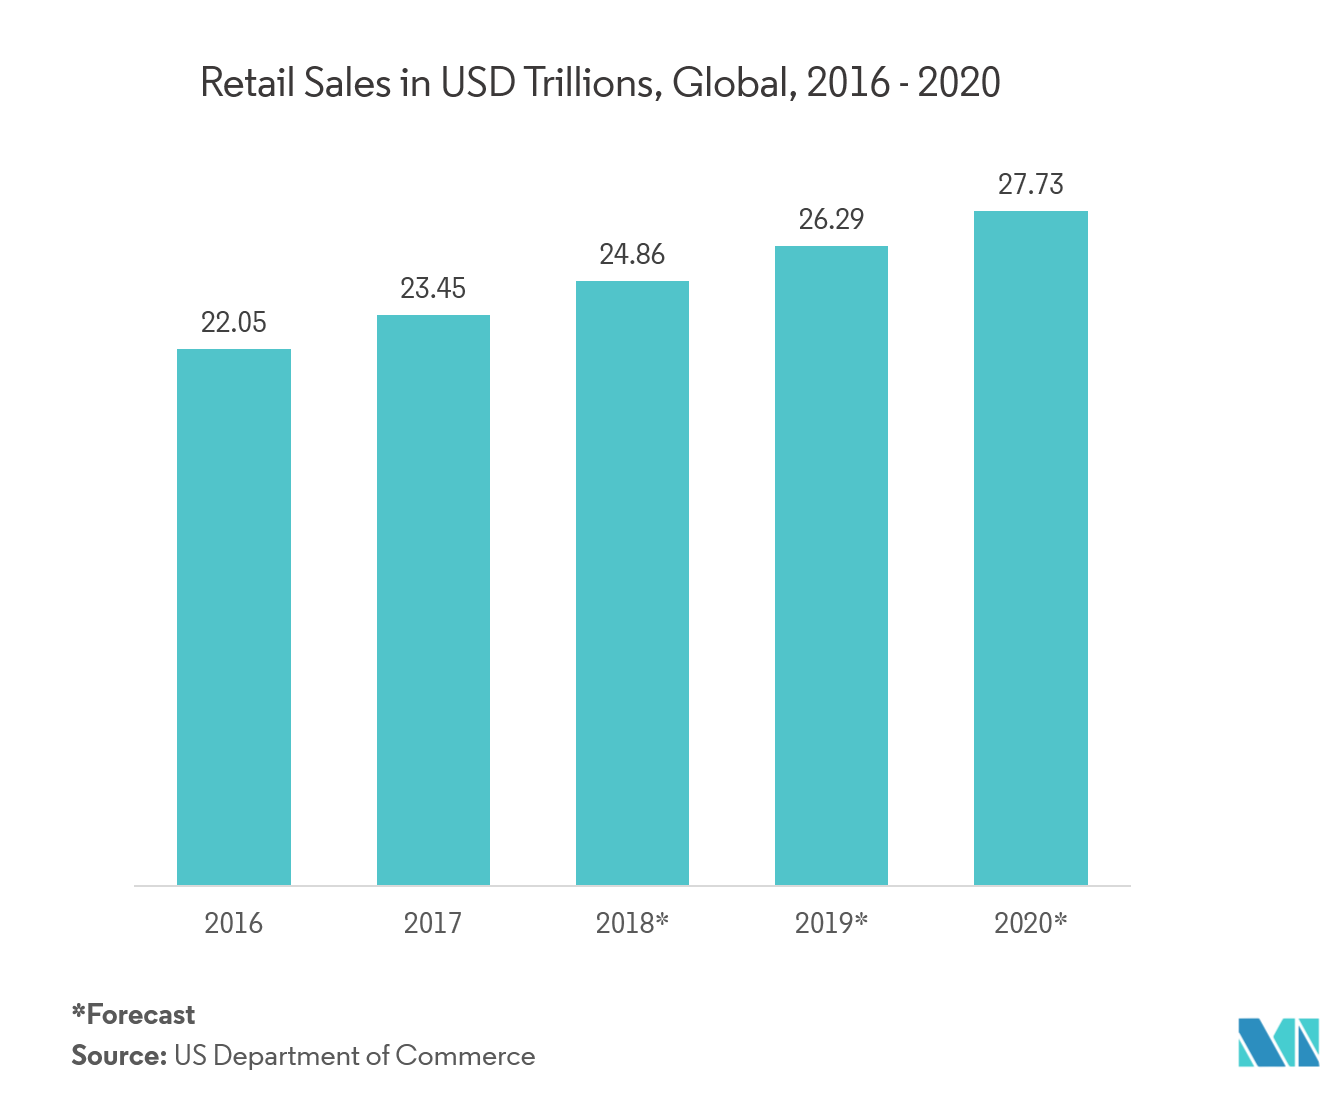 Ventas minoristas en billones de dólares, a nivel mundial, 2016 - 2020